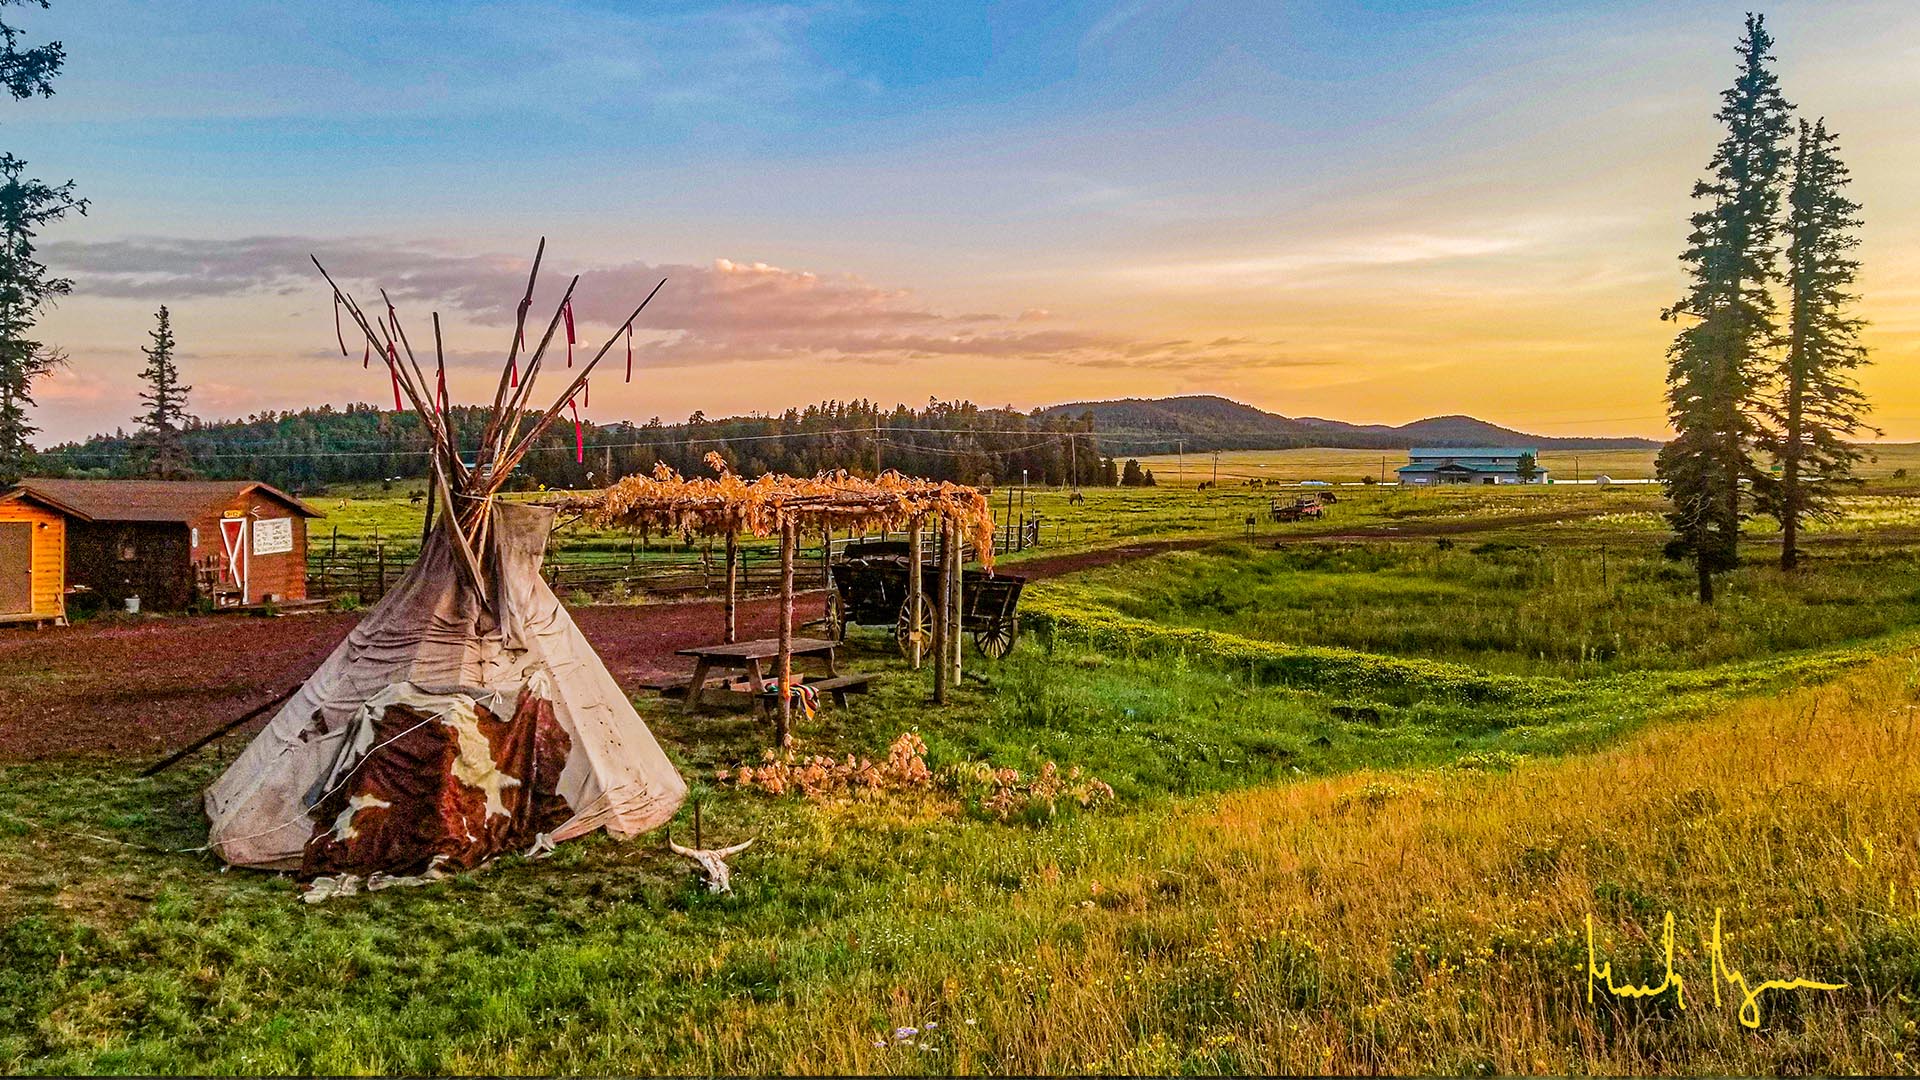 TeePee at White Mountain Apache Tribe photo by Mark Gorzen